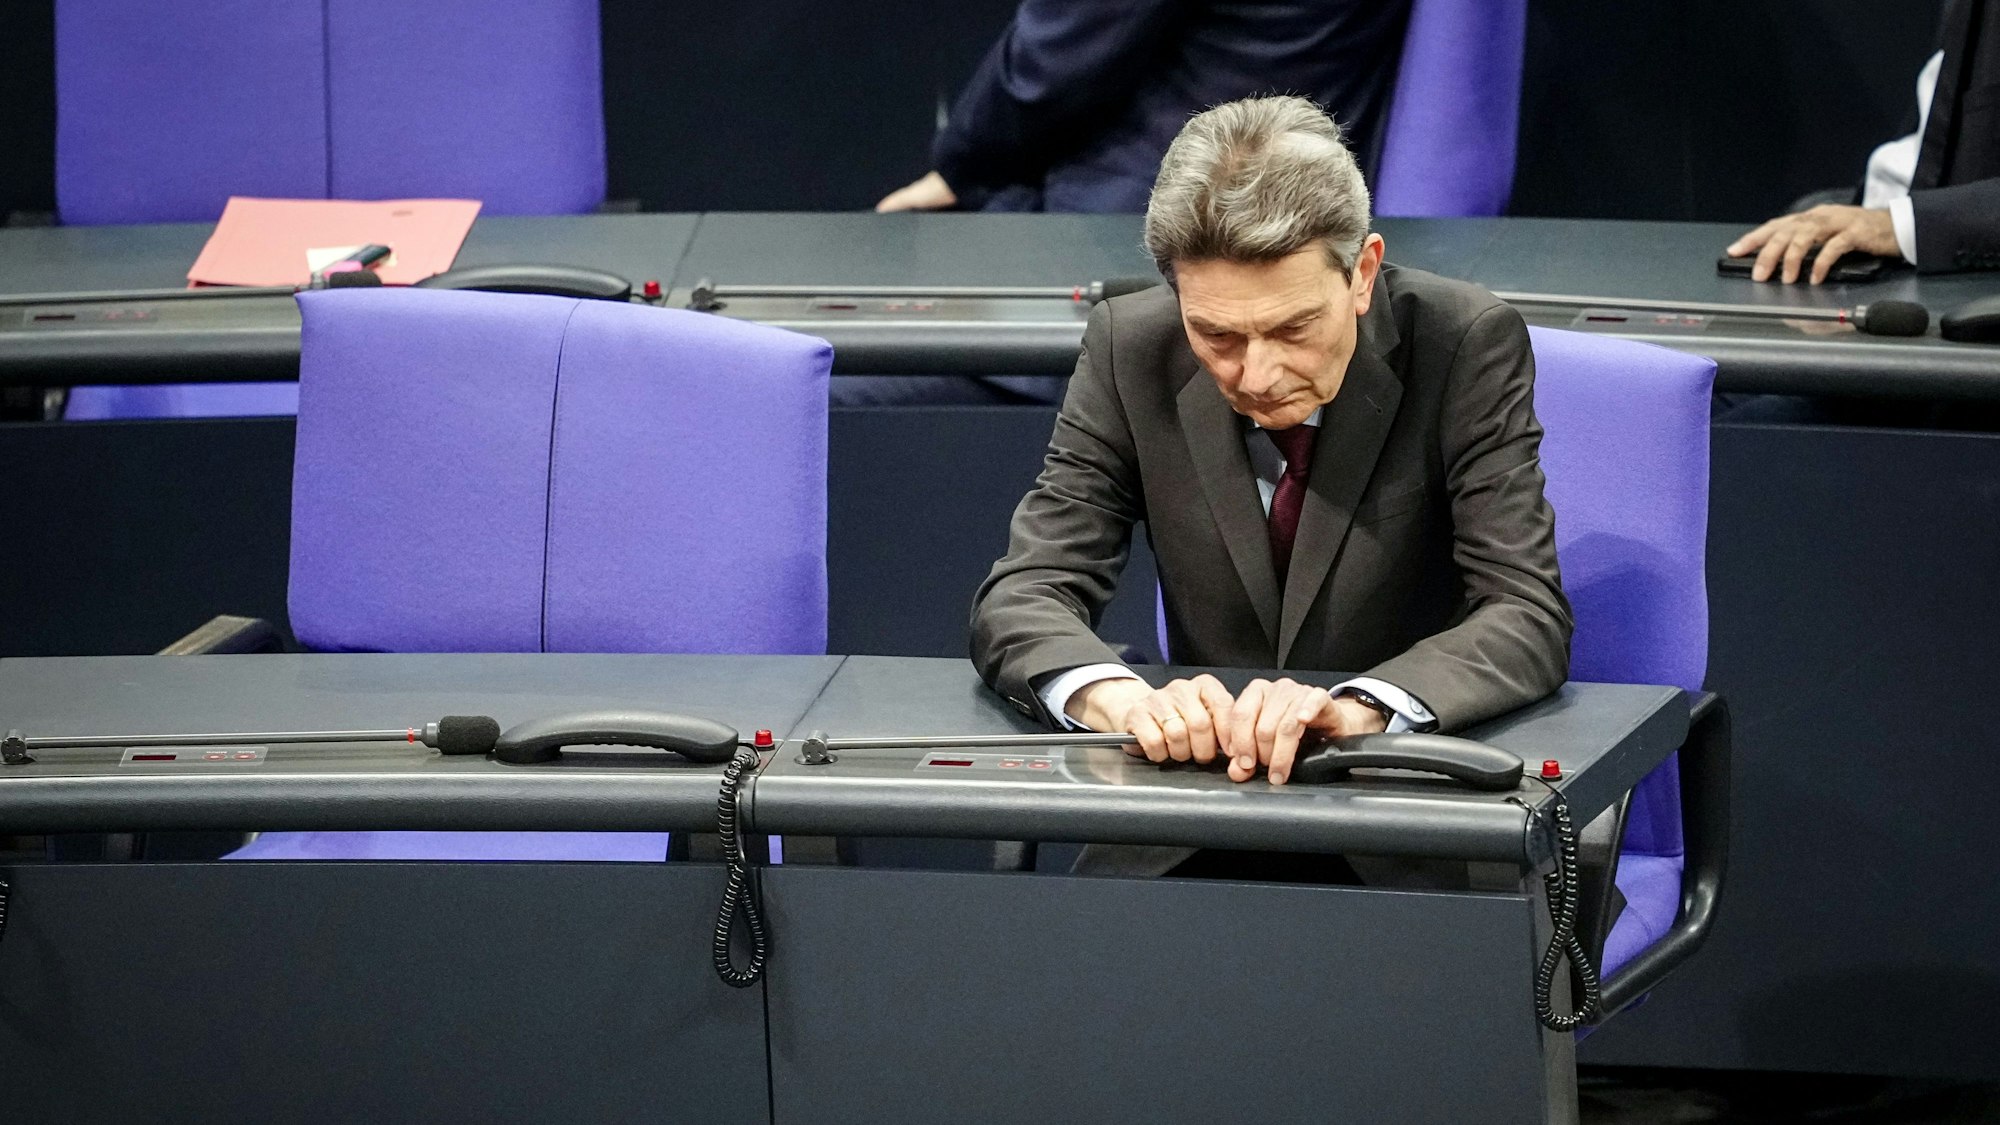 Rolf Mützenich, Vorsitzender der SPD-Bundestagsfraktion, nimmt an der Sitzung des Bundestags teil. Die Kritik an dem Kölner Politiker innerhalb der Partei reißt nicht ab. (Archivbild)